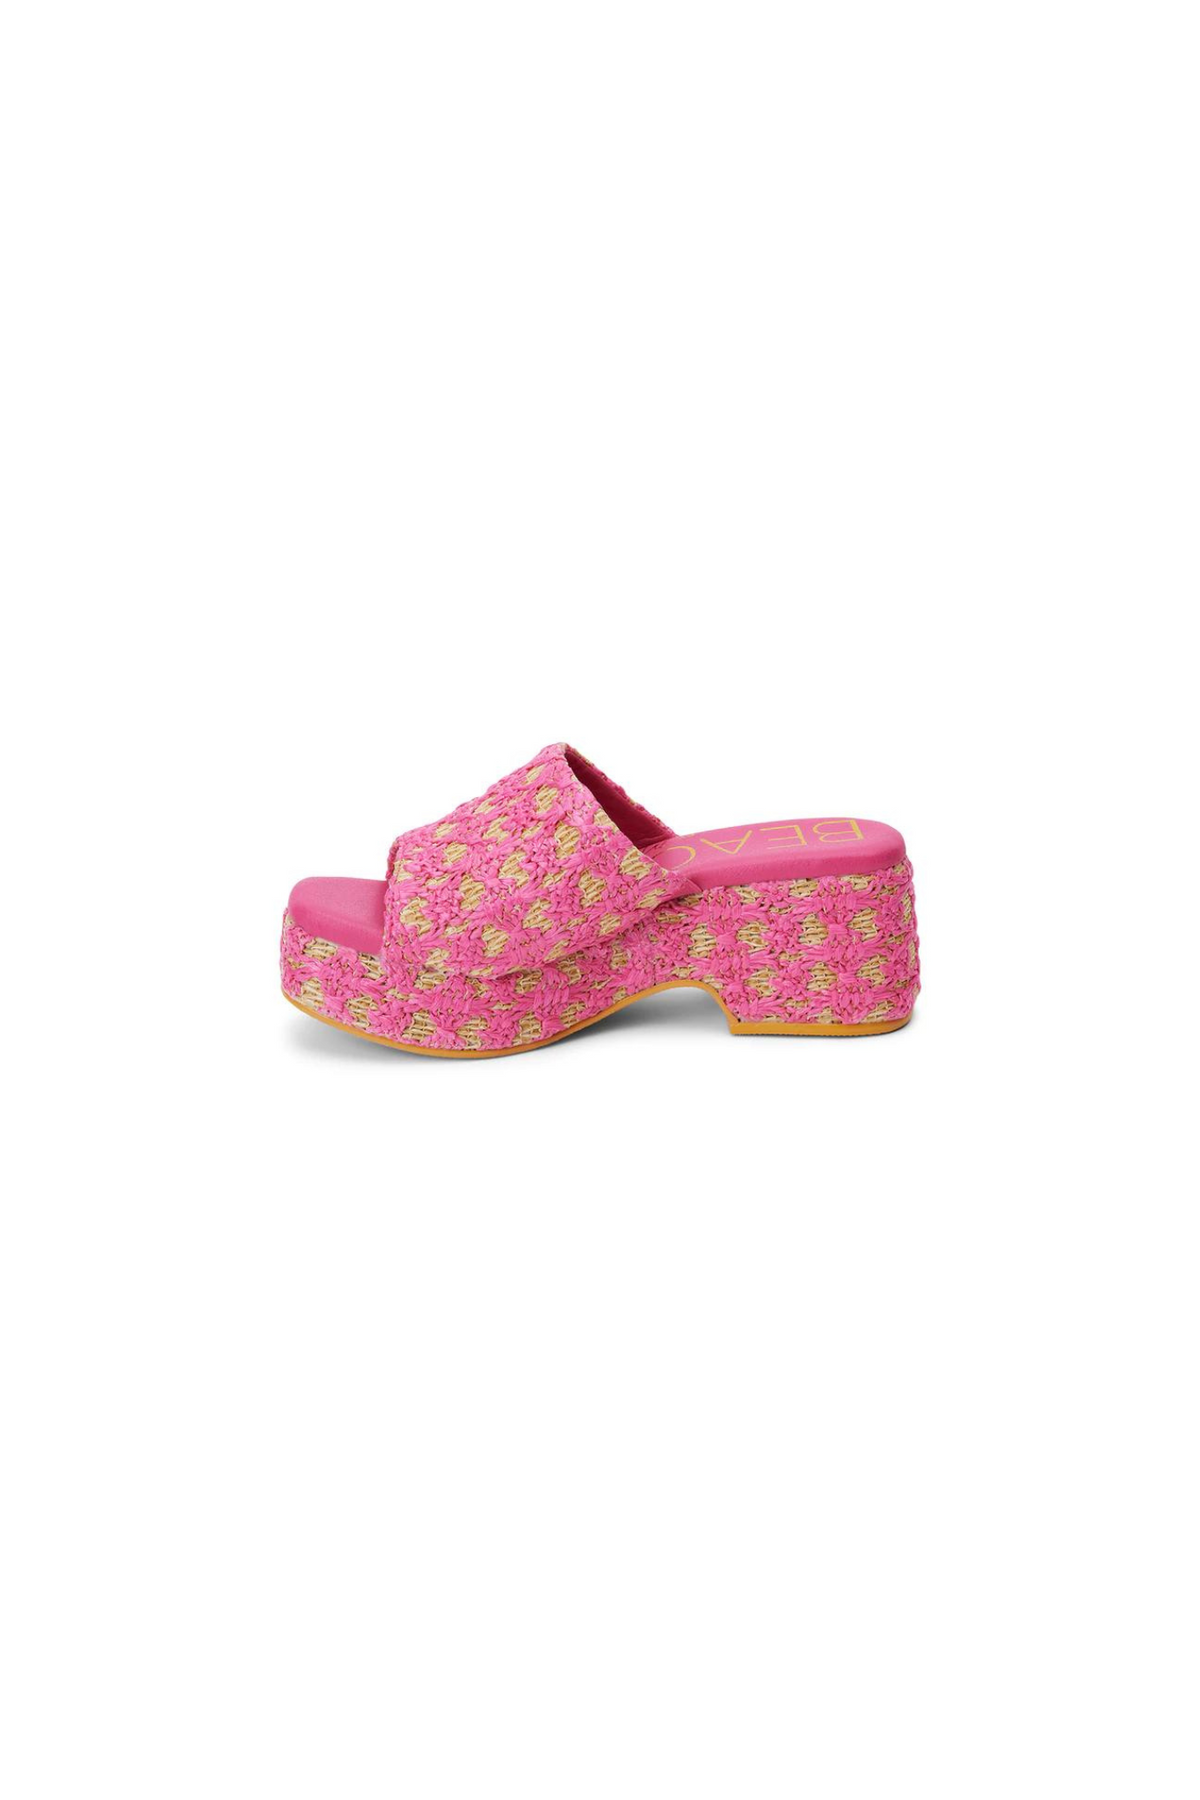 Matisse | Pink Raffia Cruz Sandals | Sweetest Stitch Online Boutique